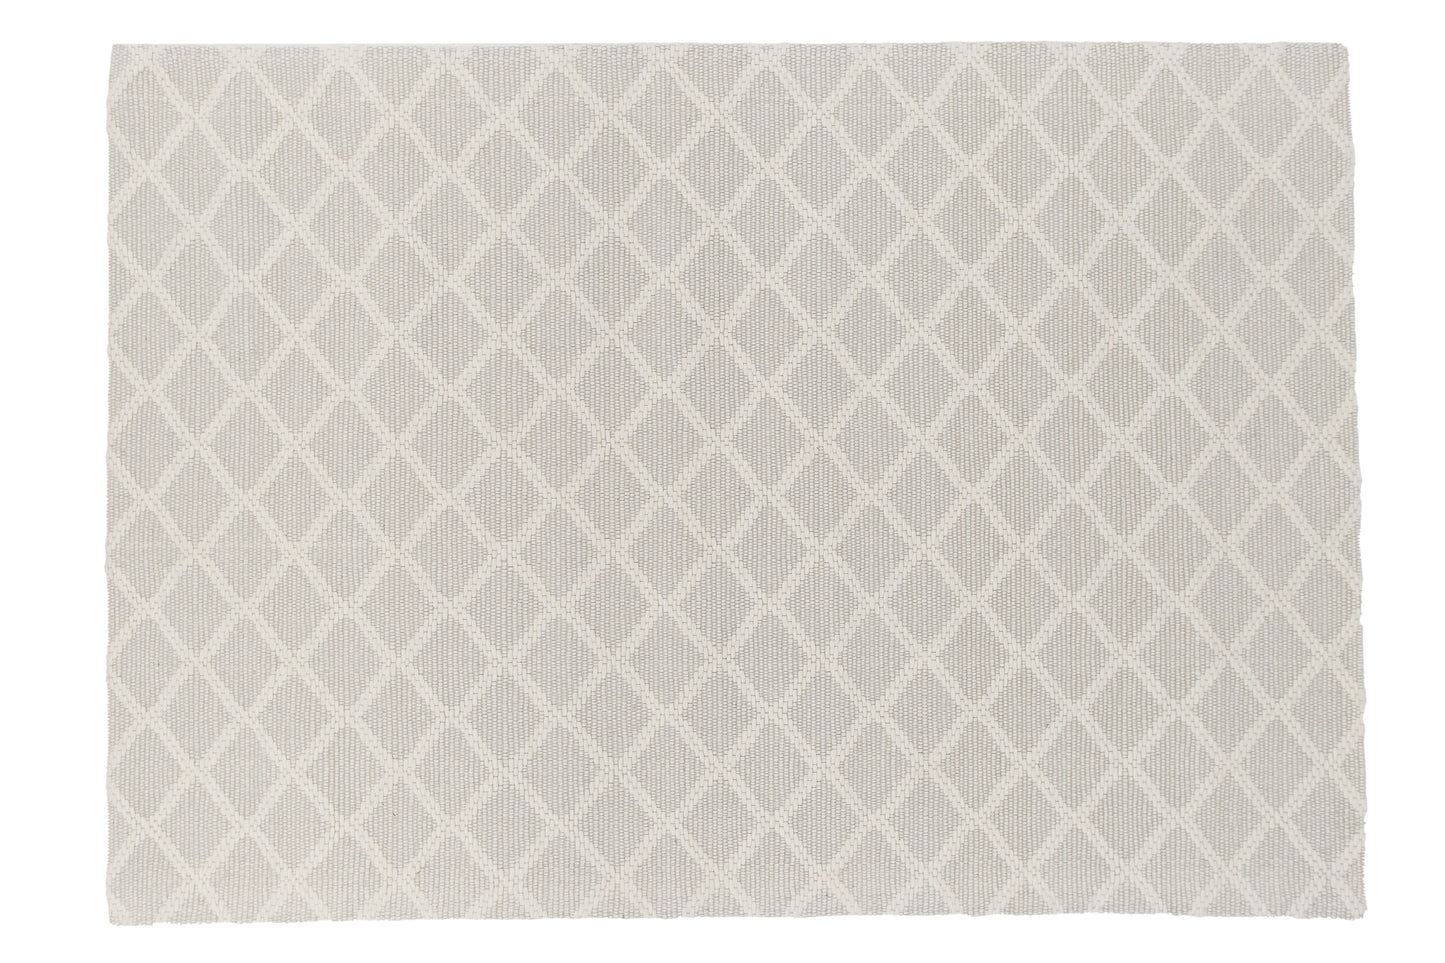 Cloudy - Gulvtæppe, Uld/polyester - 300*200, Rektangulær, Råhvid